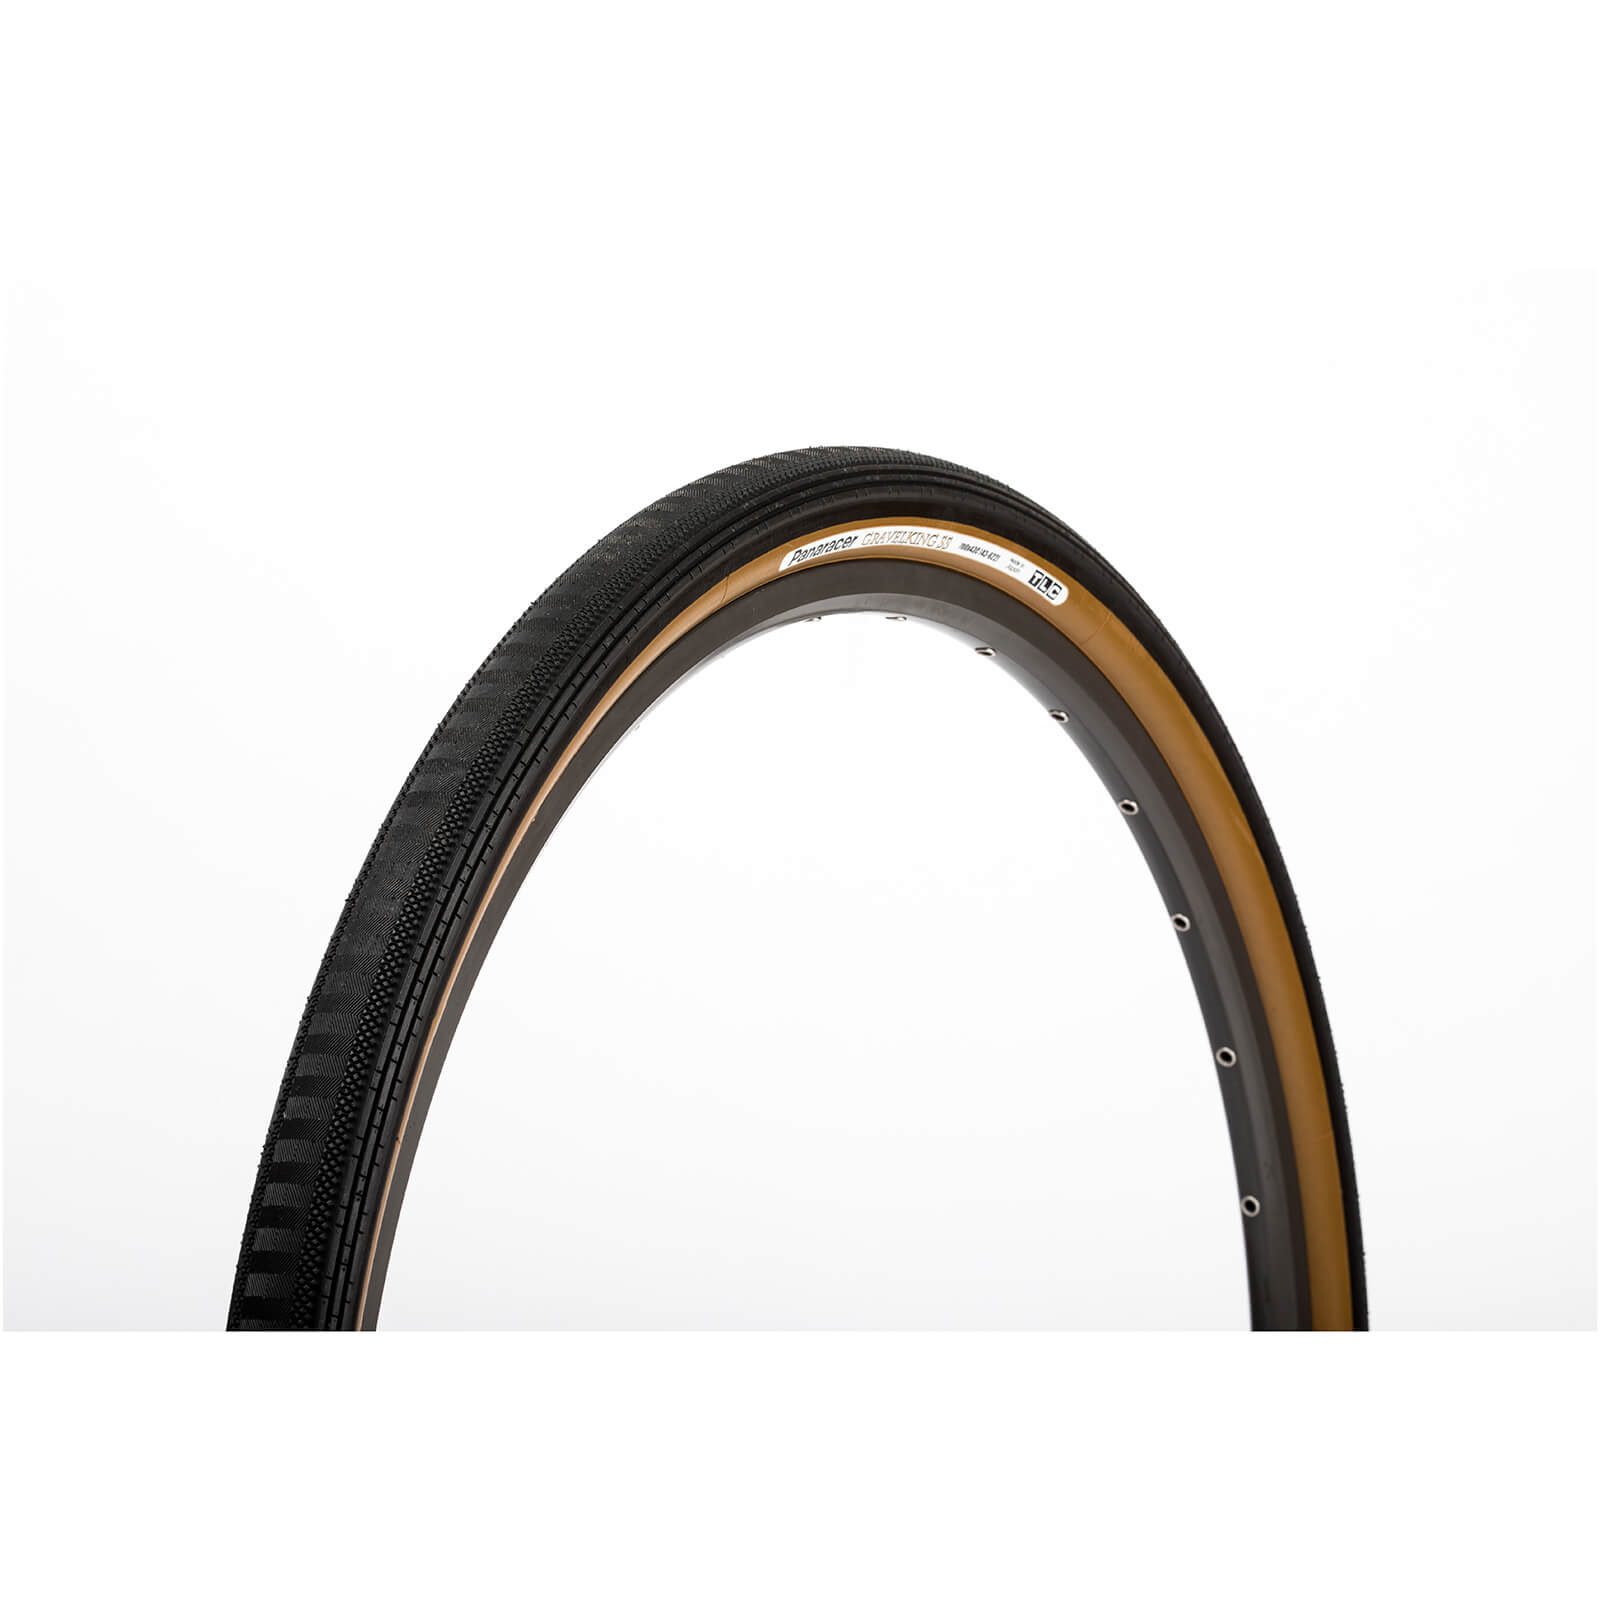 Panaracer Gravel King Semi Slick Gravel Tyre - 700 x 43C - black/brown